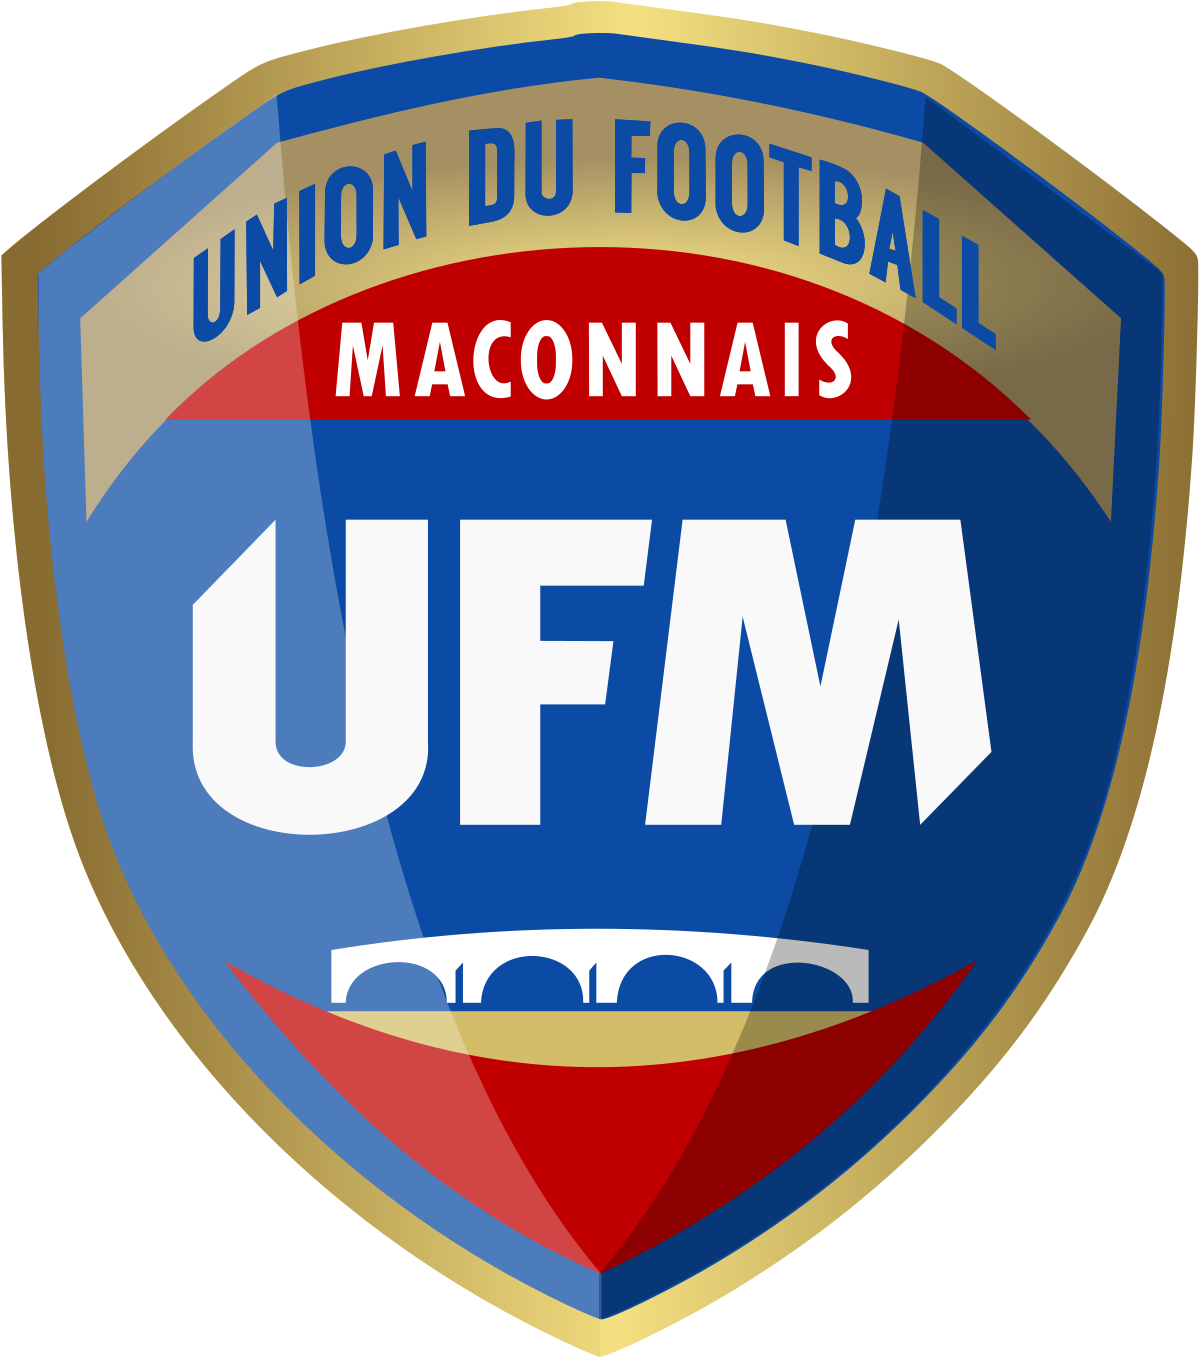 Union du Football Maconnais team logo